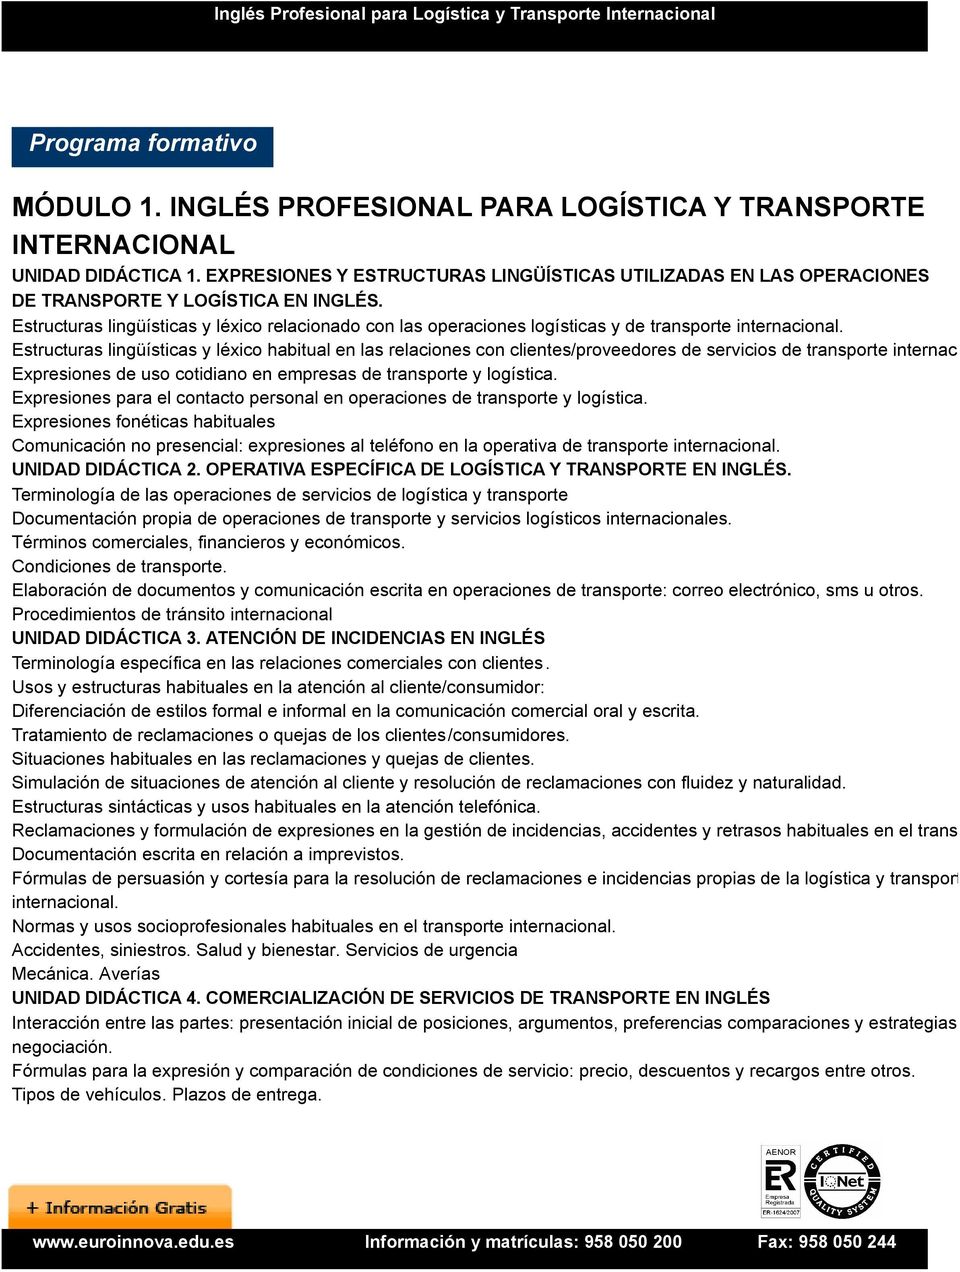 Estructuras lingüísticas y léxico relacionado con las operaciones logísticas y de transporte internacional.